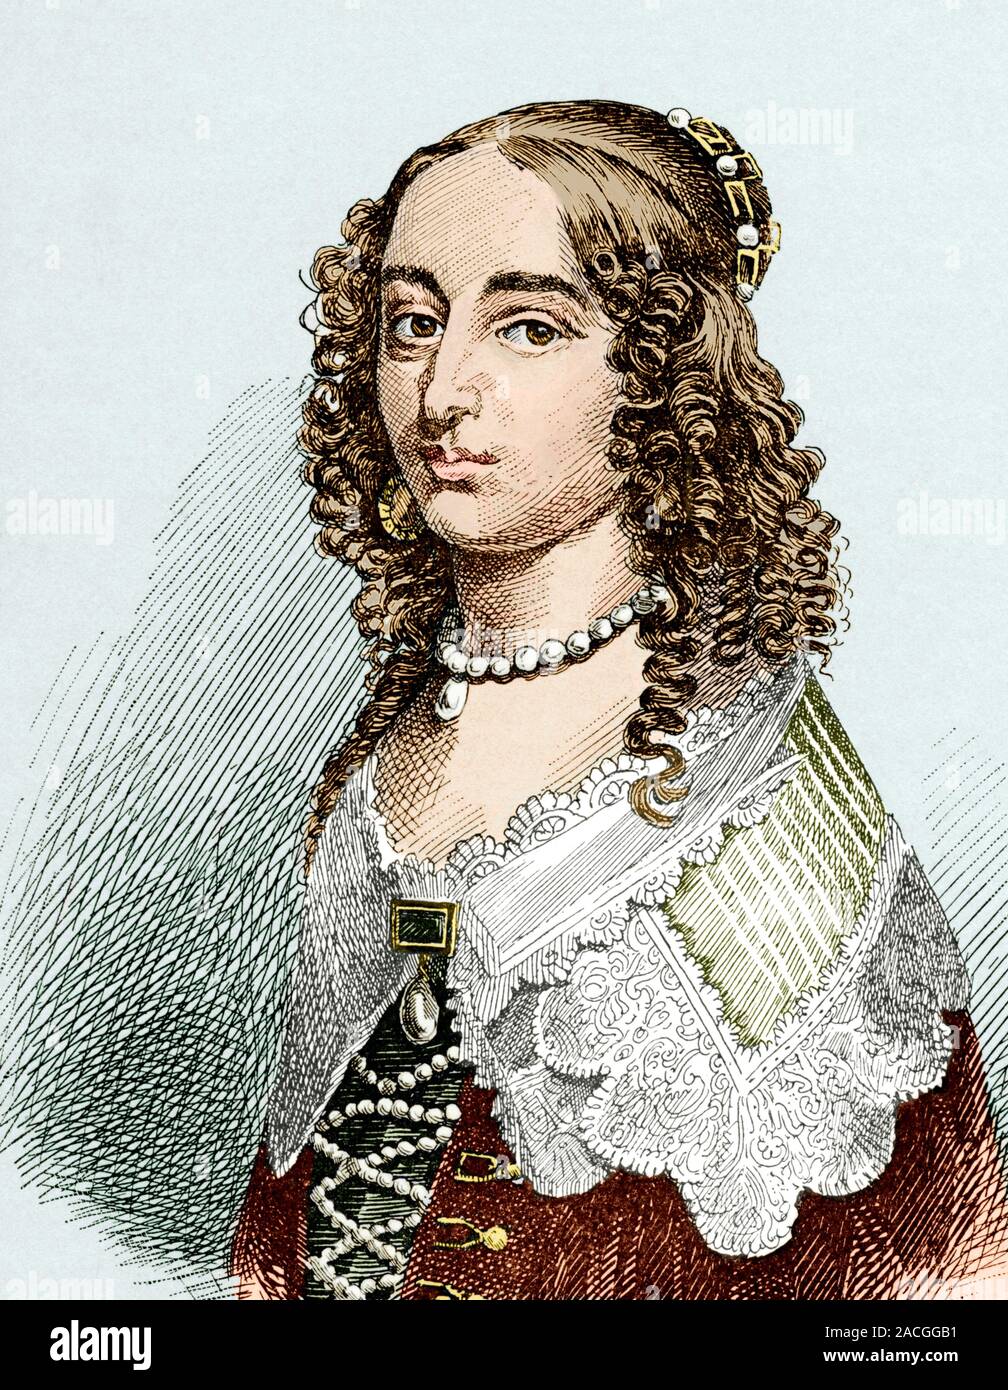 Elisabetta di Boemia, Principessa Palatine (1618-1680), filosofo. Elisabetta era la figlia di Federico V e di Elisabetta Stuart. Ella era highl Foto Stock